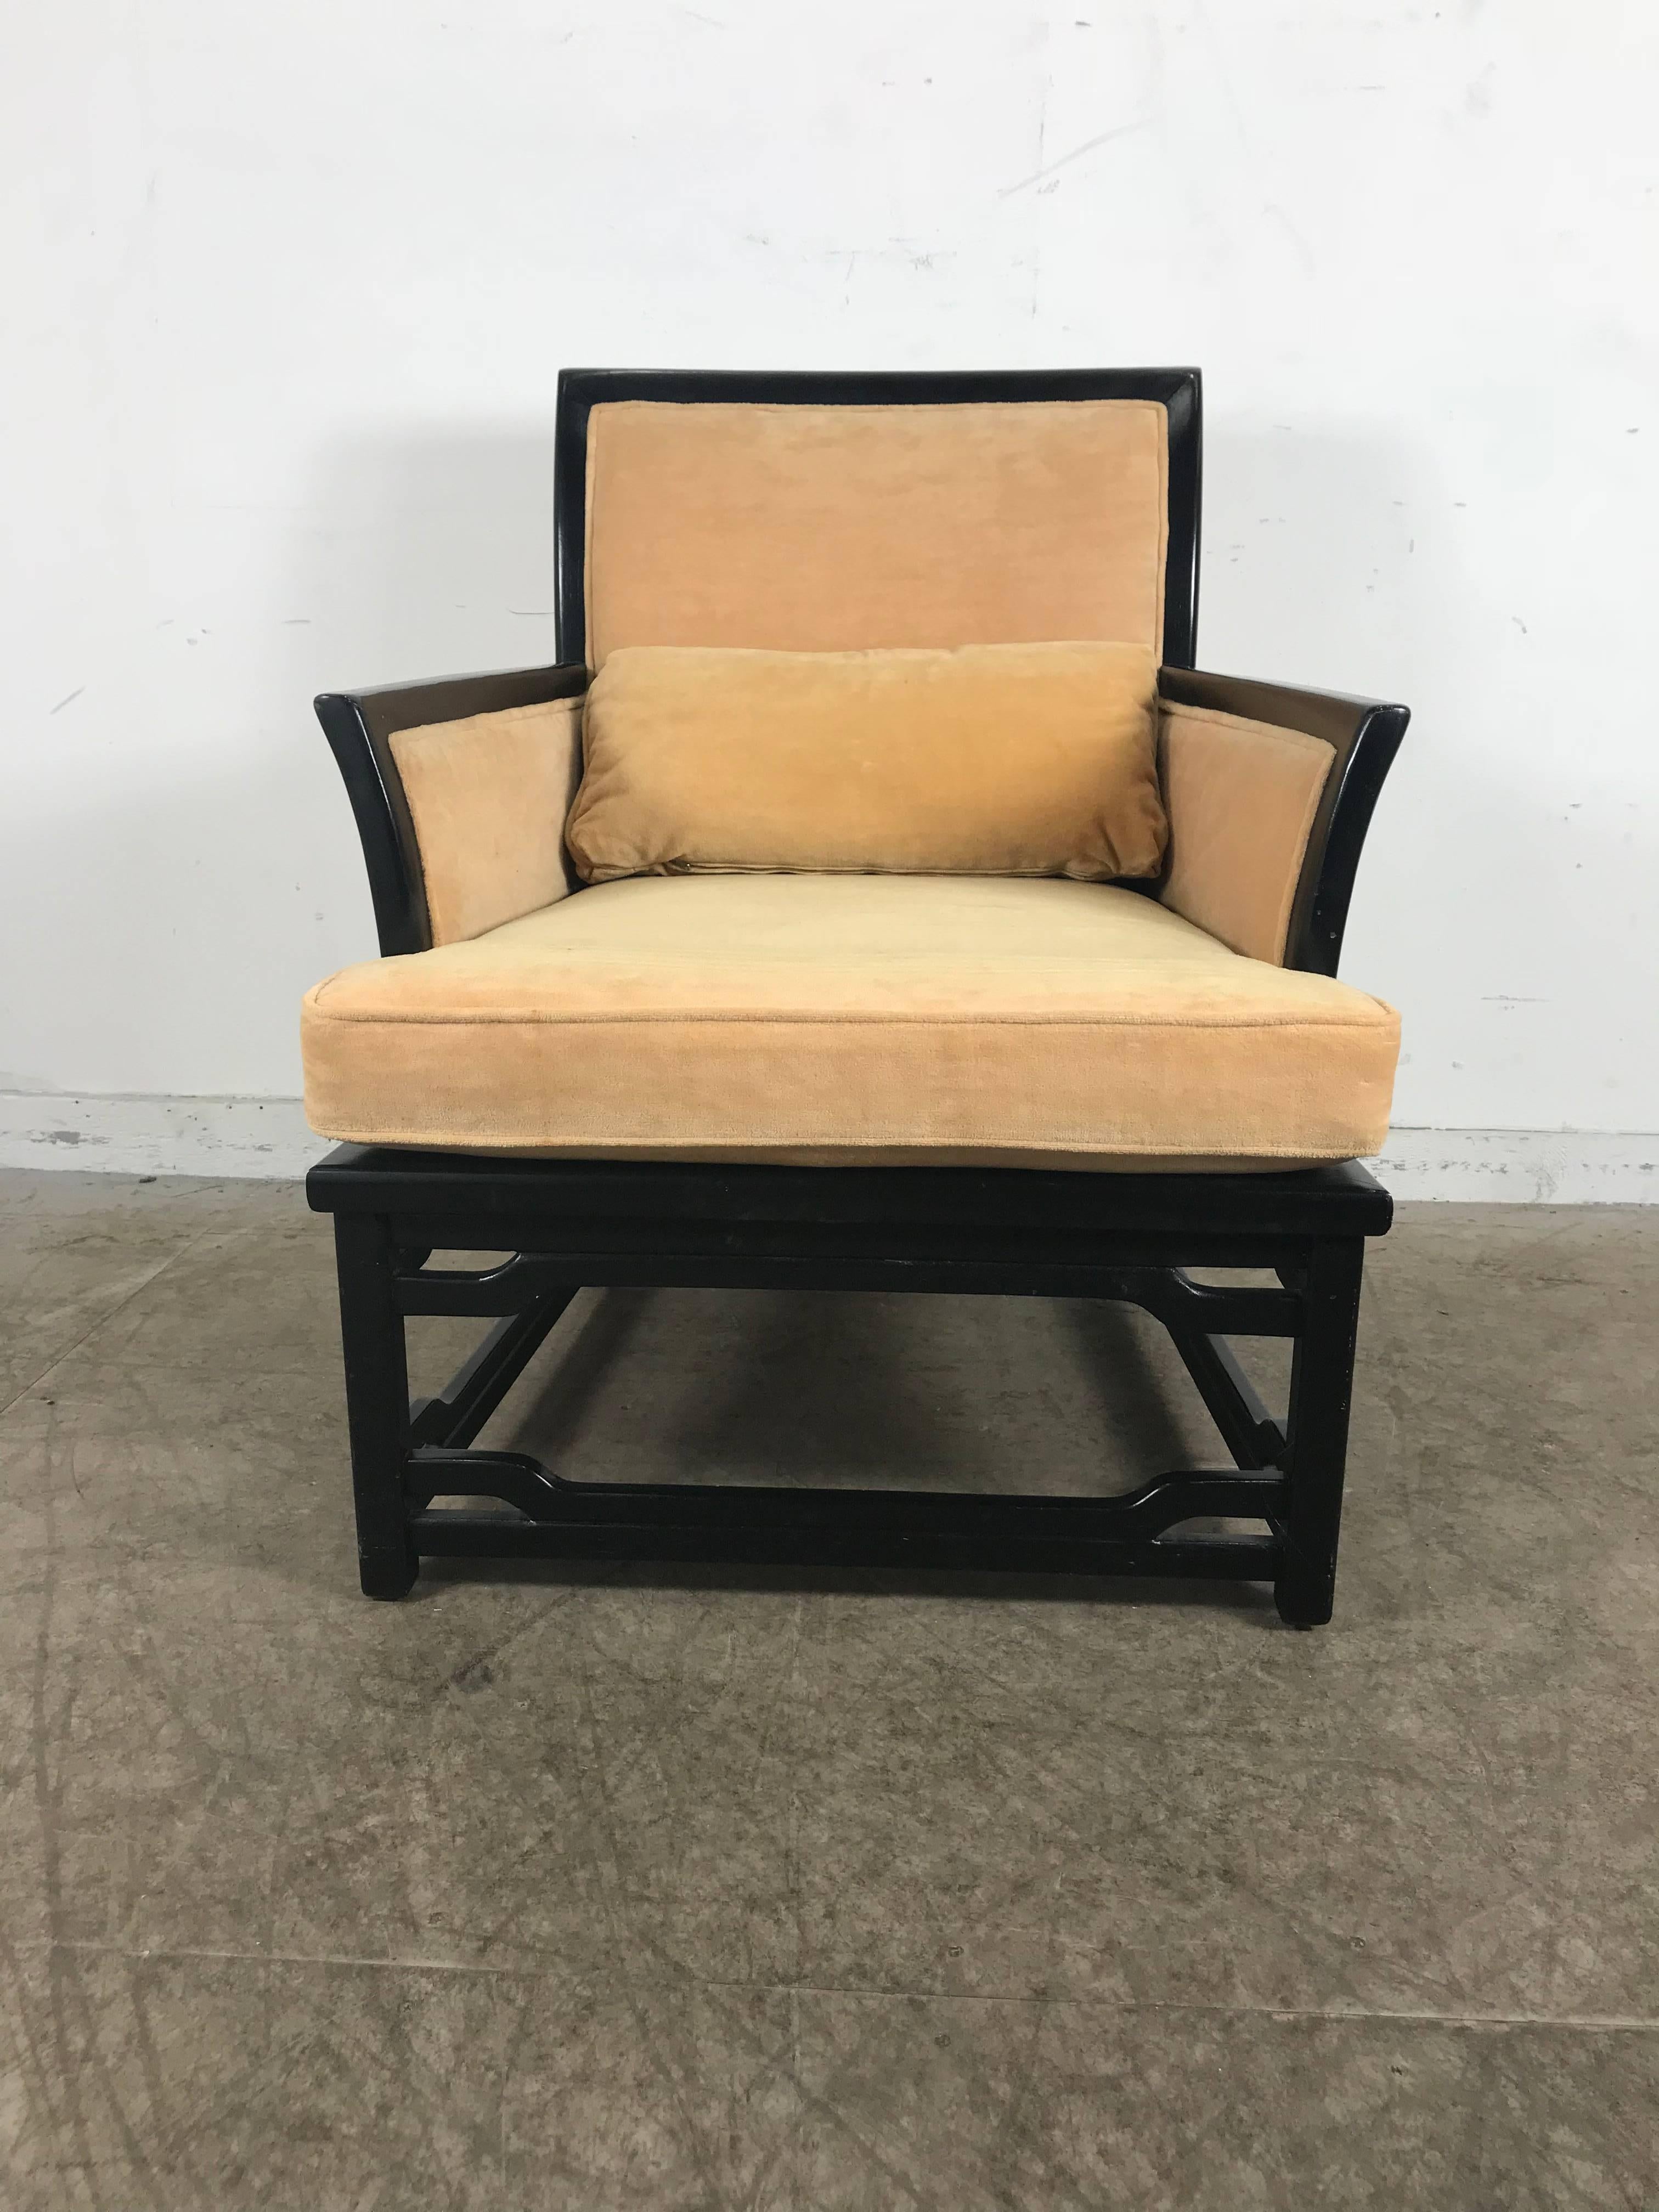 Schwarzer Lack und Samt asiatisch inspirierter Sessel von Hibriten im Stil von James Mont, stilvoll und bequem. Persönliche Zustellung in New York City oder überall auf dem Weg von Buffalo NY.